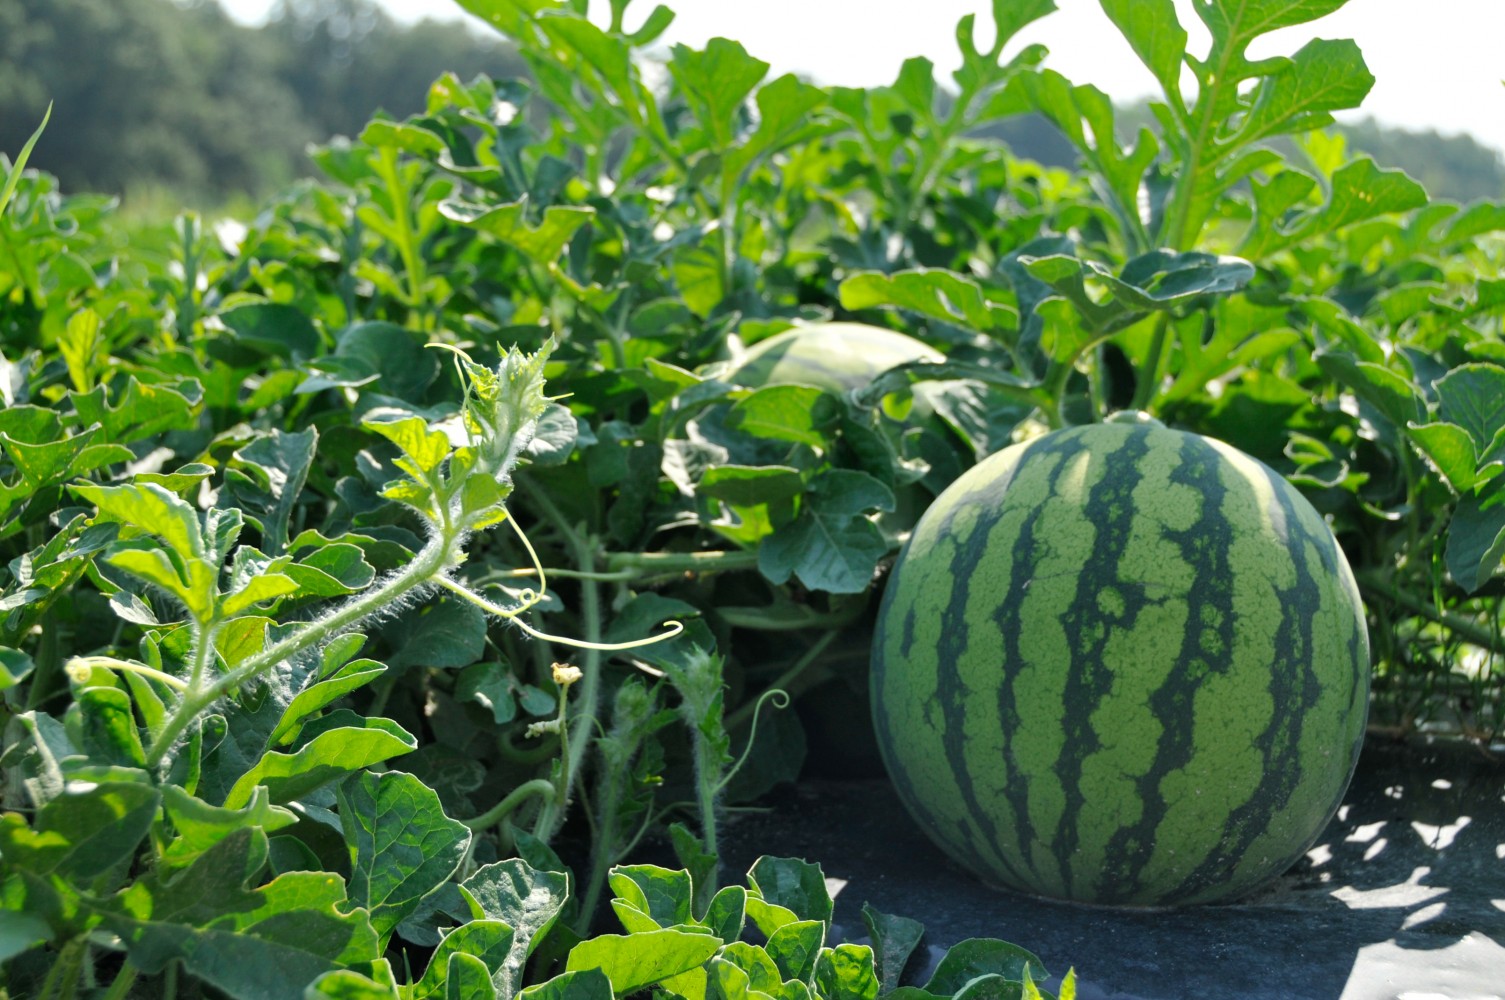 Growing & harvesting watermelon